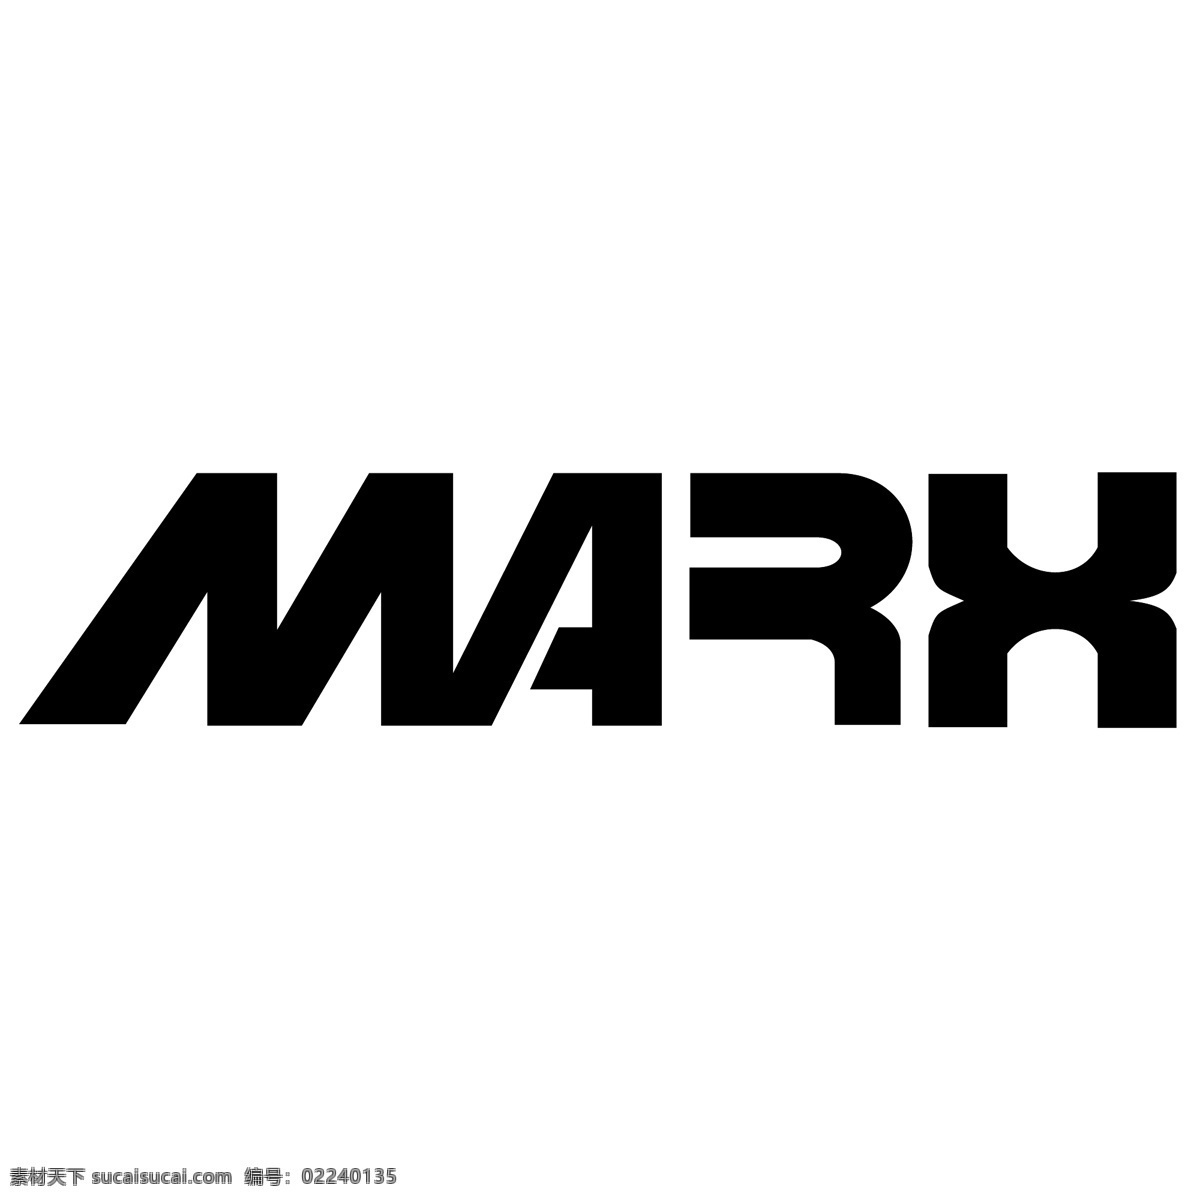 马克思 标识 公司 免费 品牌 品牌标识 商标 矢量标志下载 免费矢量标识 矢量